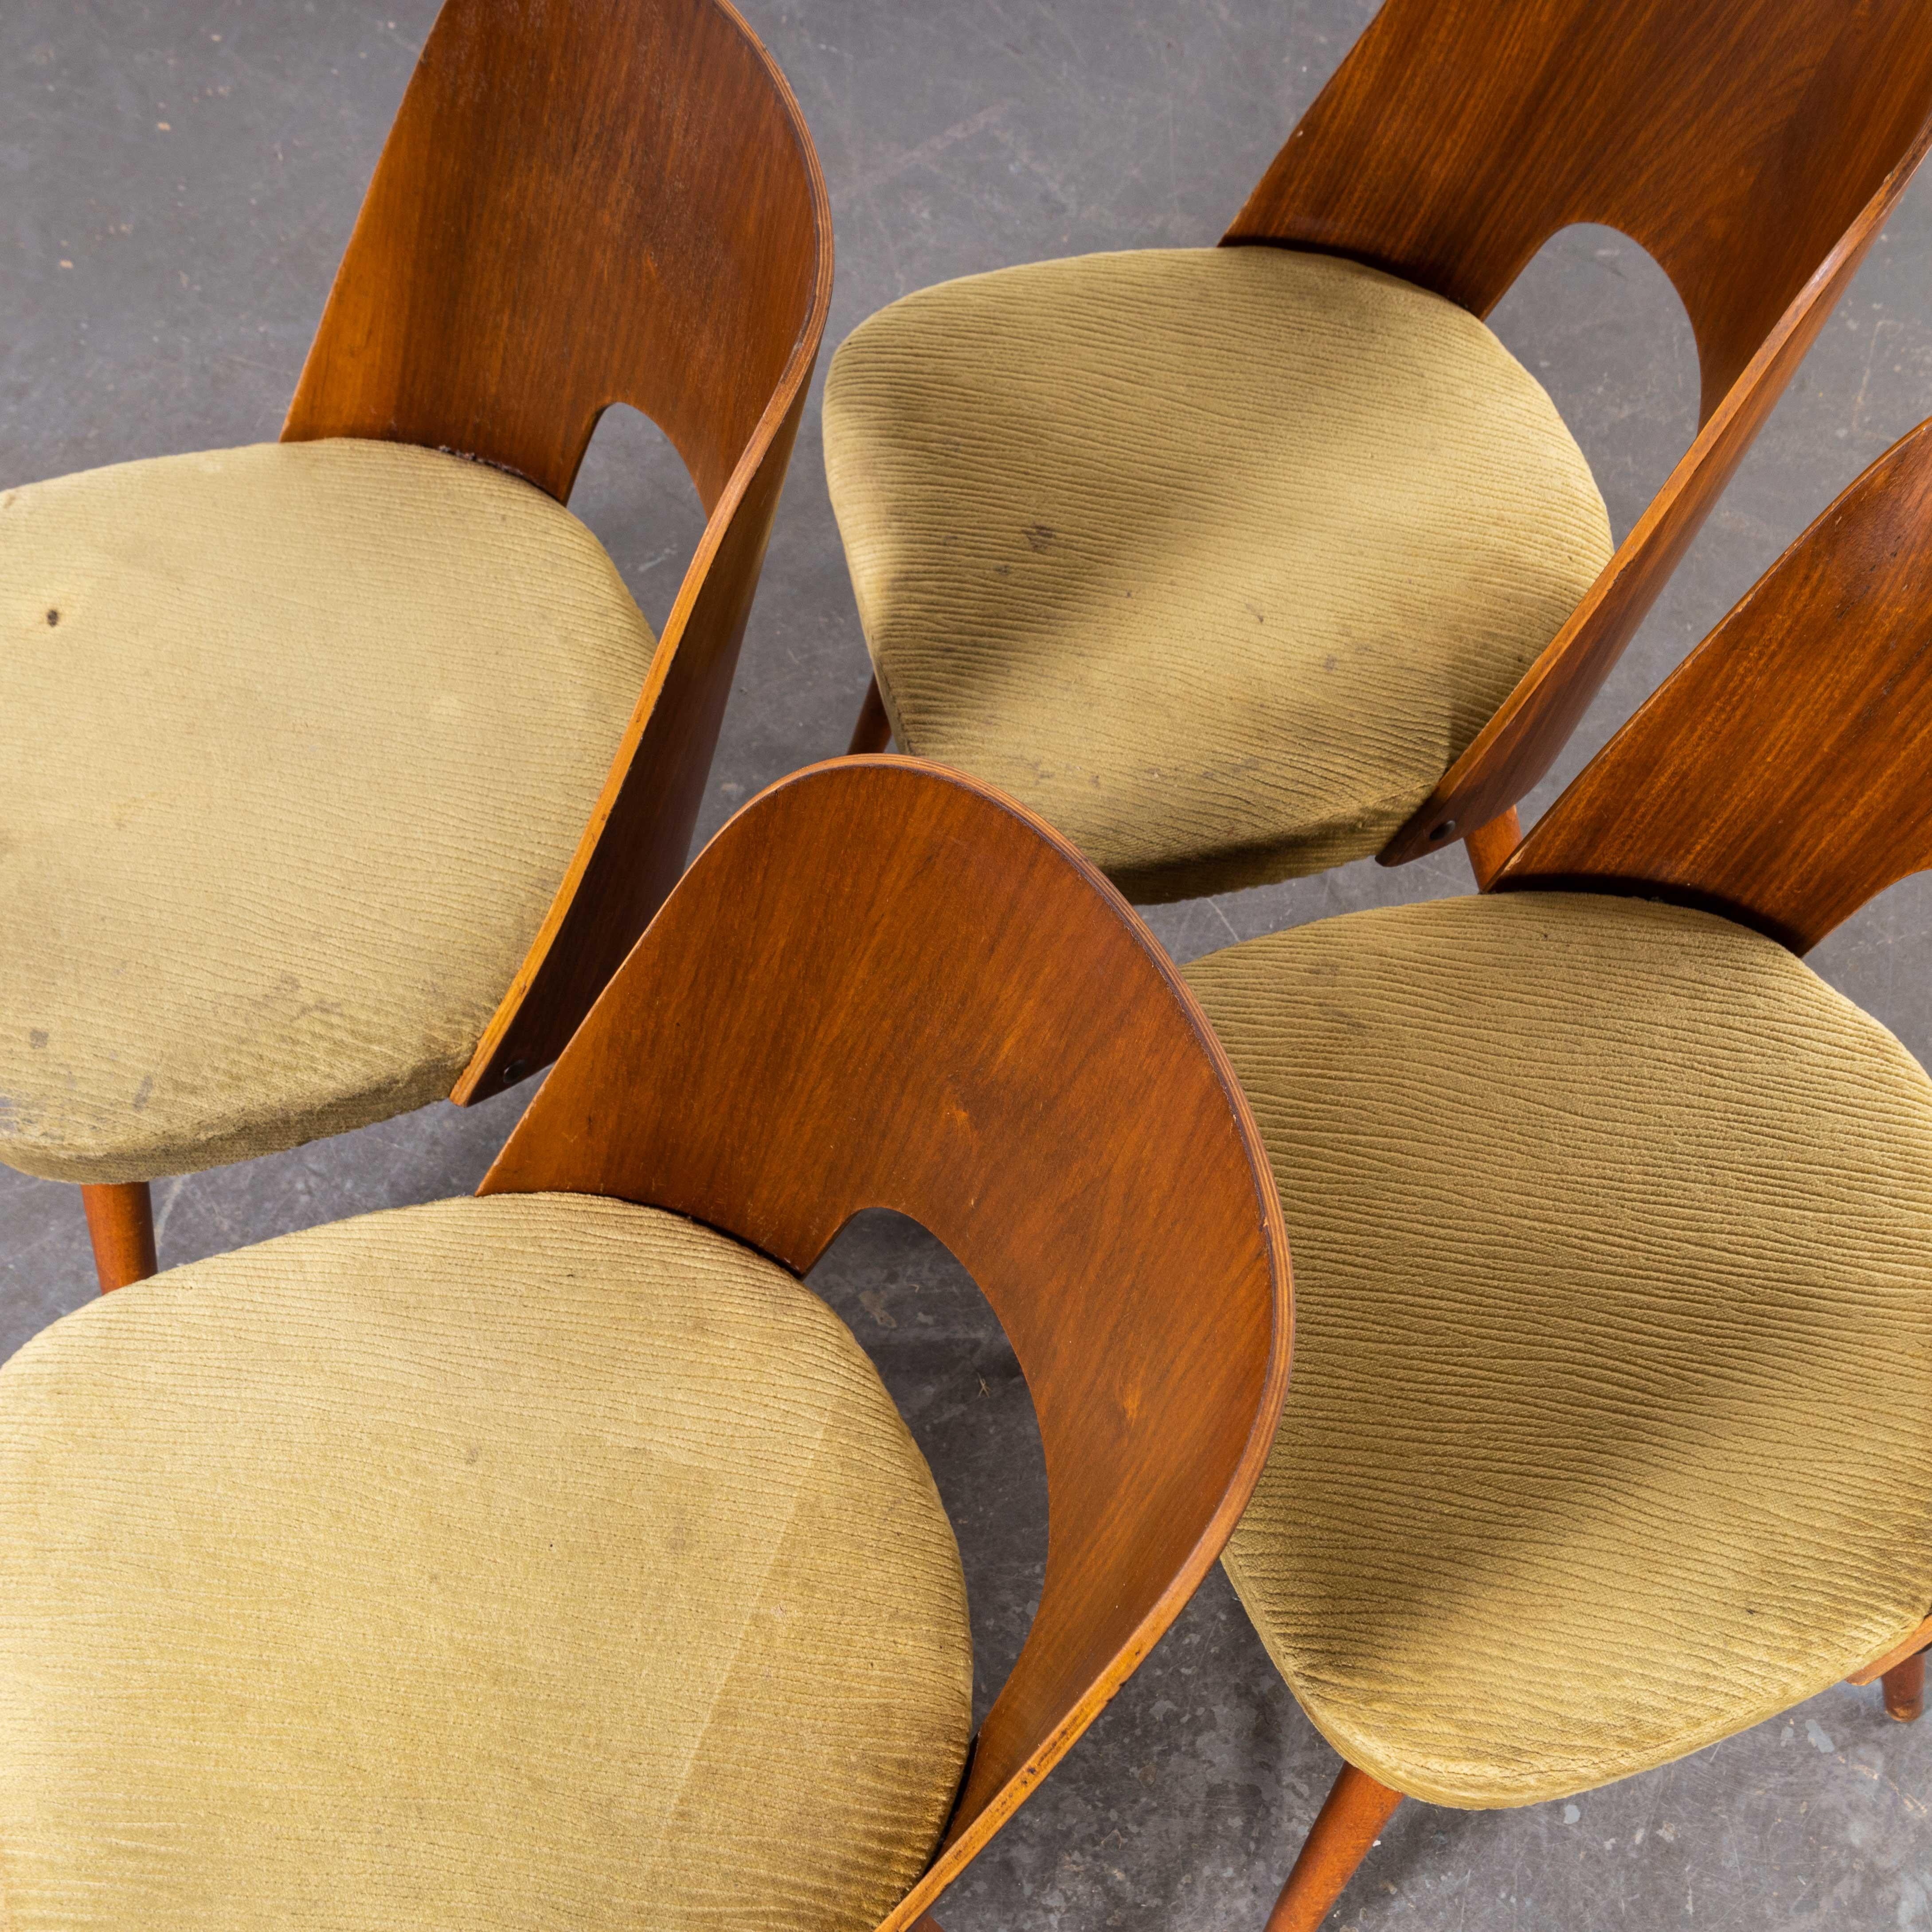 Ensemble de quatre chaises de salle à manger rembourrées des années 1960 - Oswald Haerdtl (1929)
Ensemble de quatre chaises de salle à manger rembourrées des années 1960 - Oswald Haerdtl (1929). Ces chaises ont été produites par la célèbre